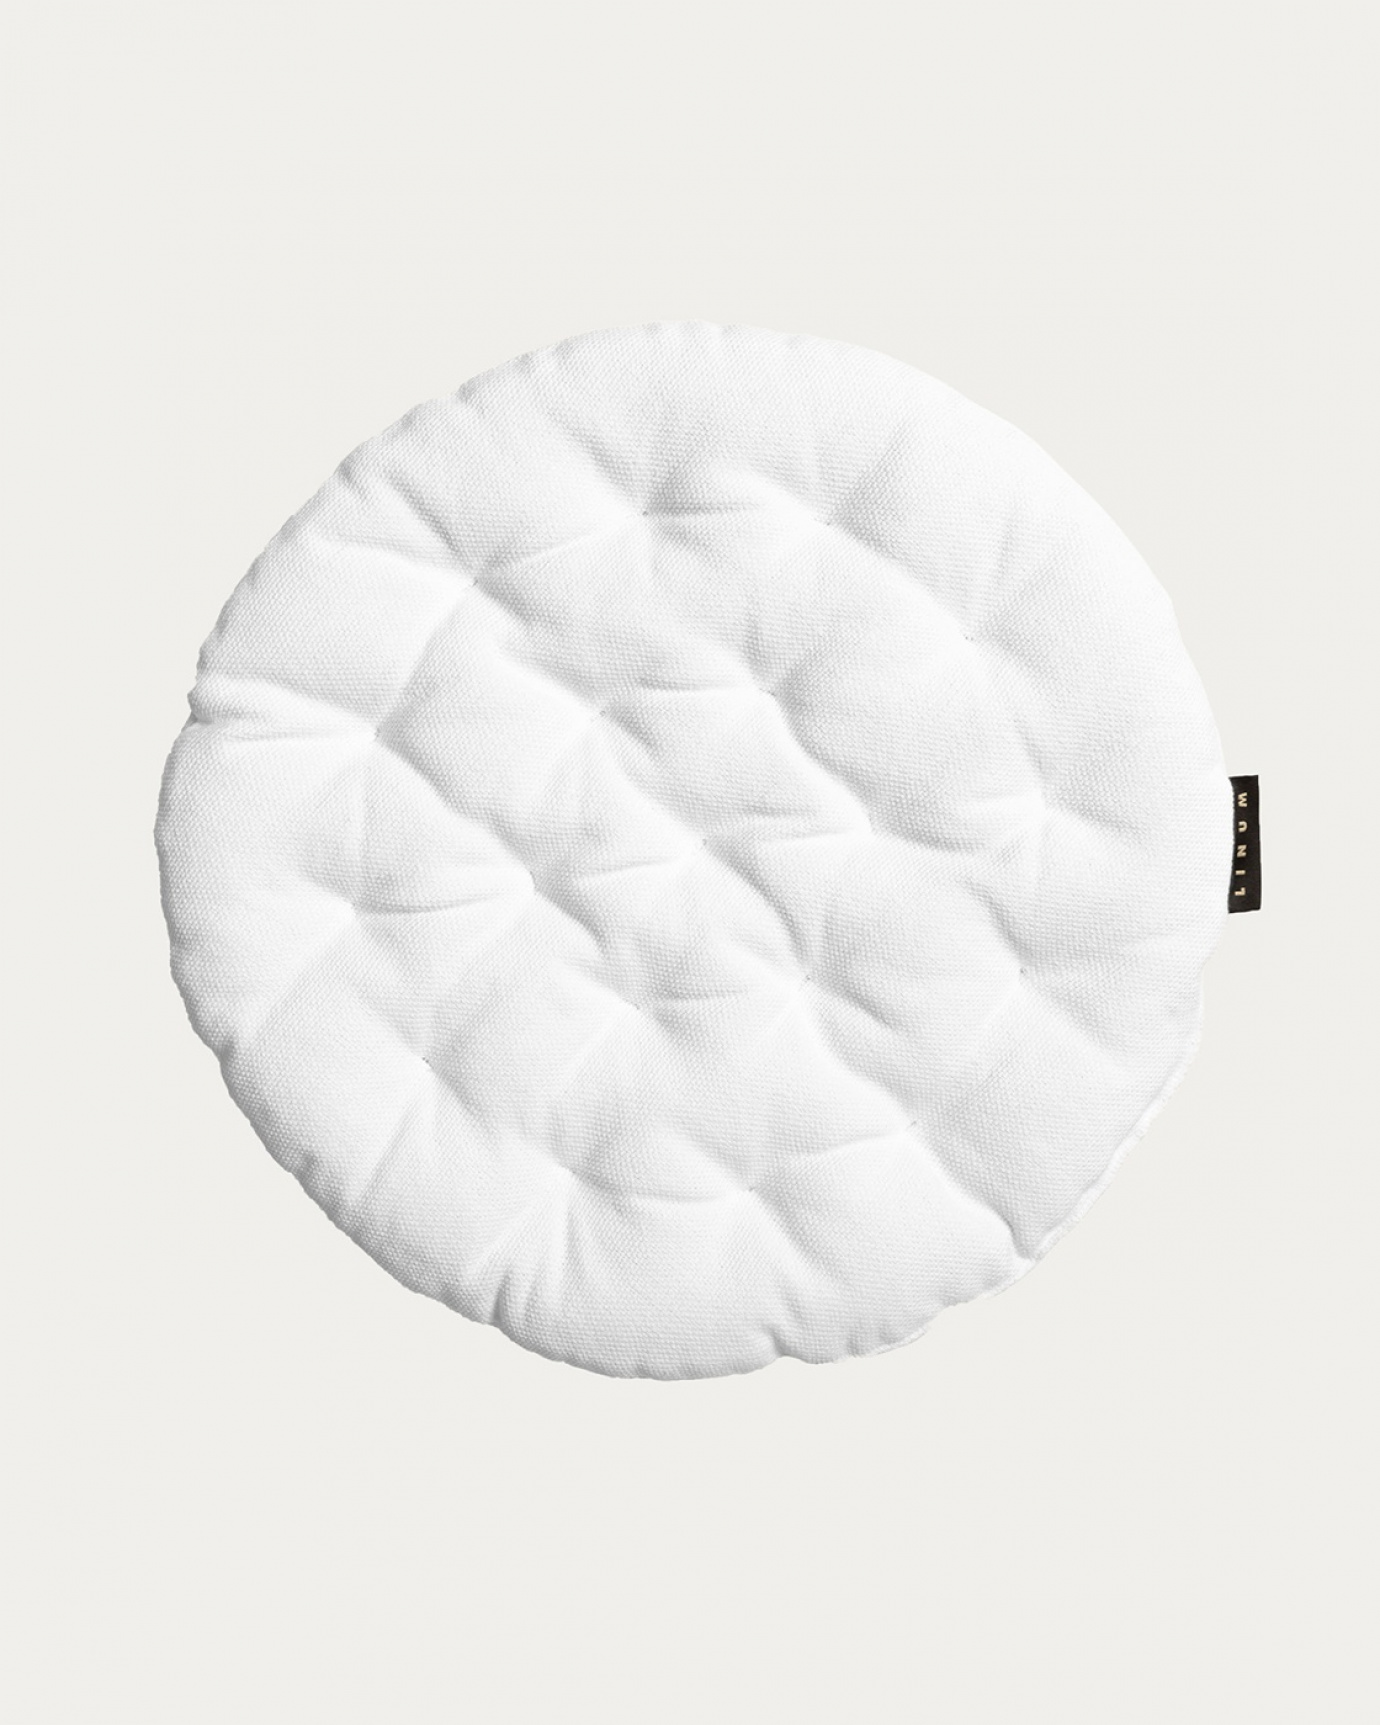 Immagine prodotto bianco PEPPER cuscini sedie di cotone con imbottitura in poliestere di LINUM DESIGN. Dimensioni ø37 cm.